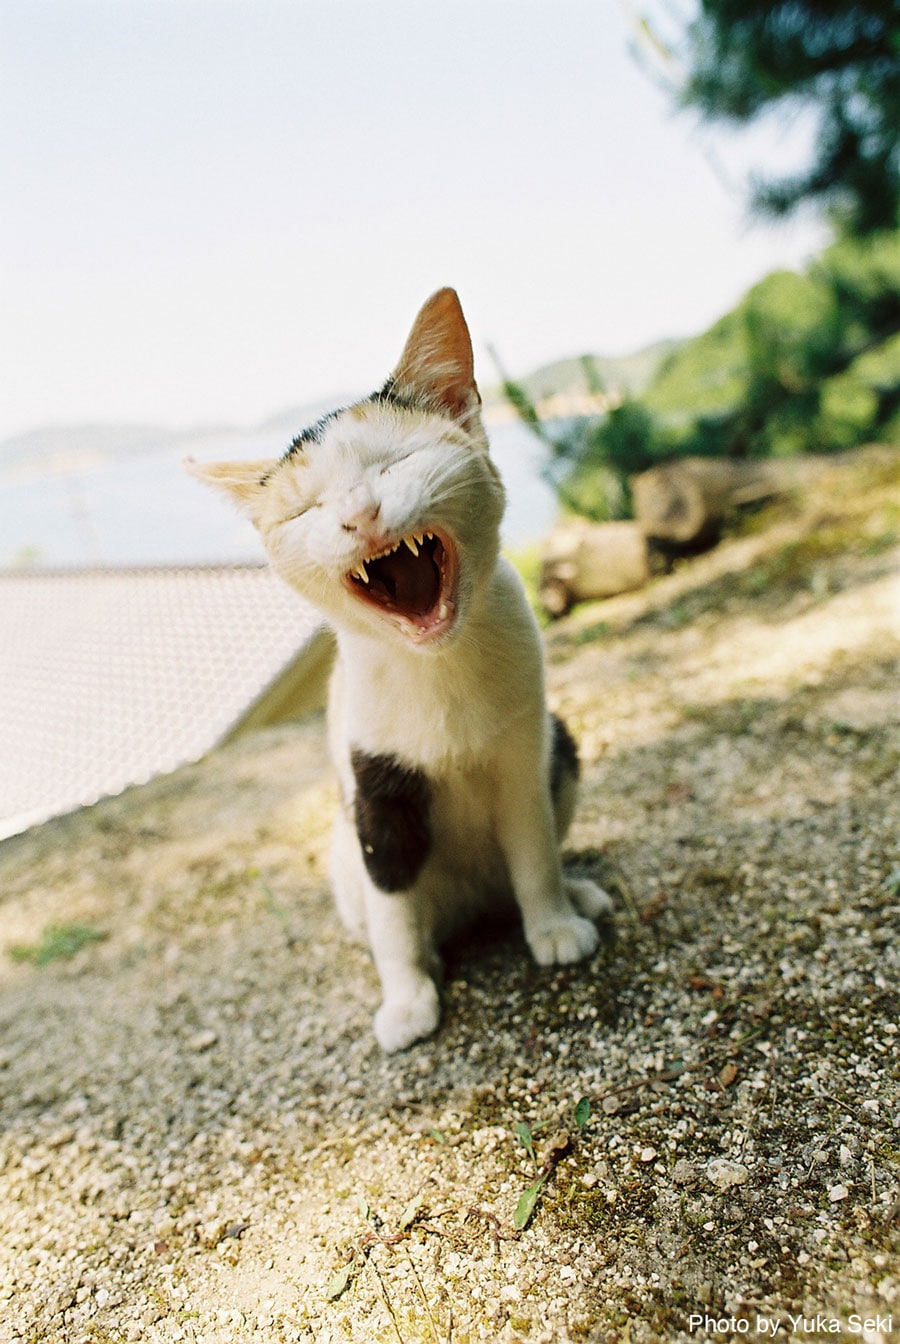 【おおあくびねこ篇】眠気に誘う猫ちゃん。2005年7月、瀬戸内海の島で撮影。